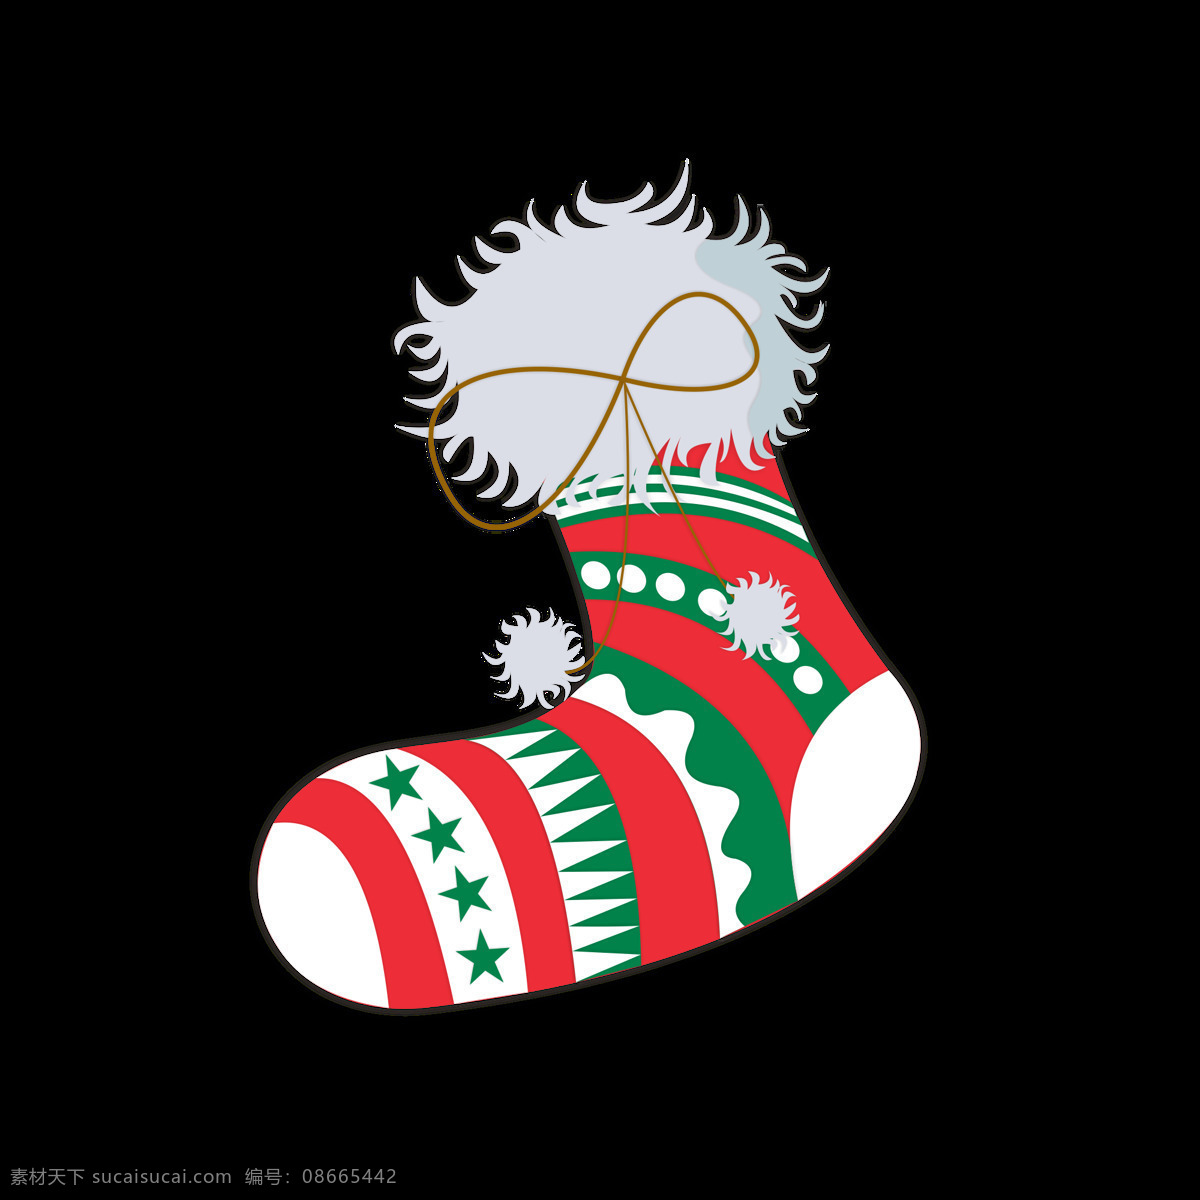 圣诞节 元素 卡通 可爱 袜子 节日 冬天 元素设计